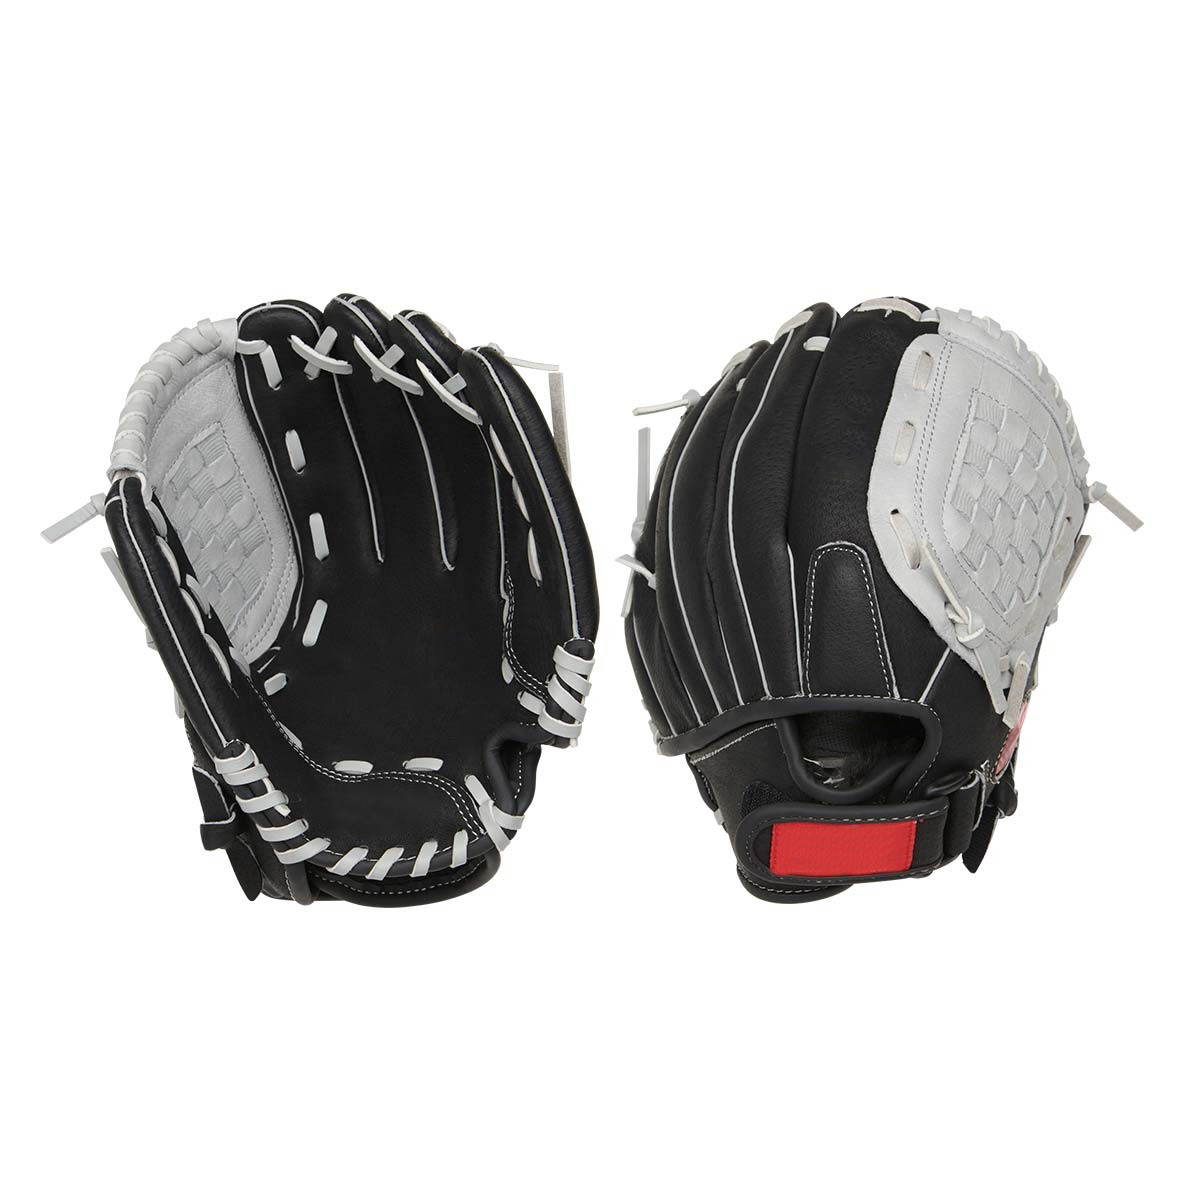 10.5"Japanese full leather fashion youth baseball gloves